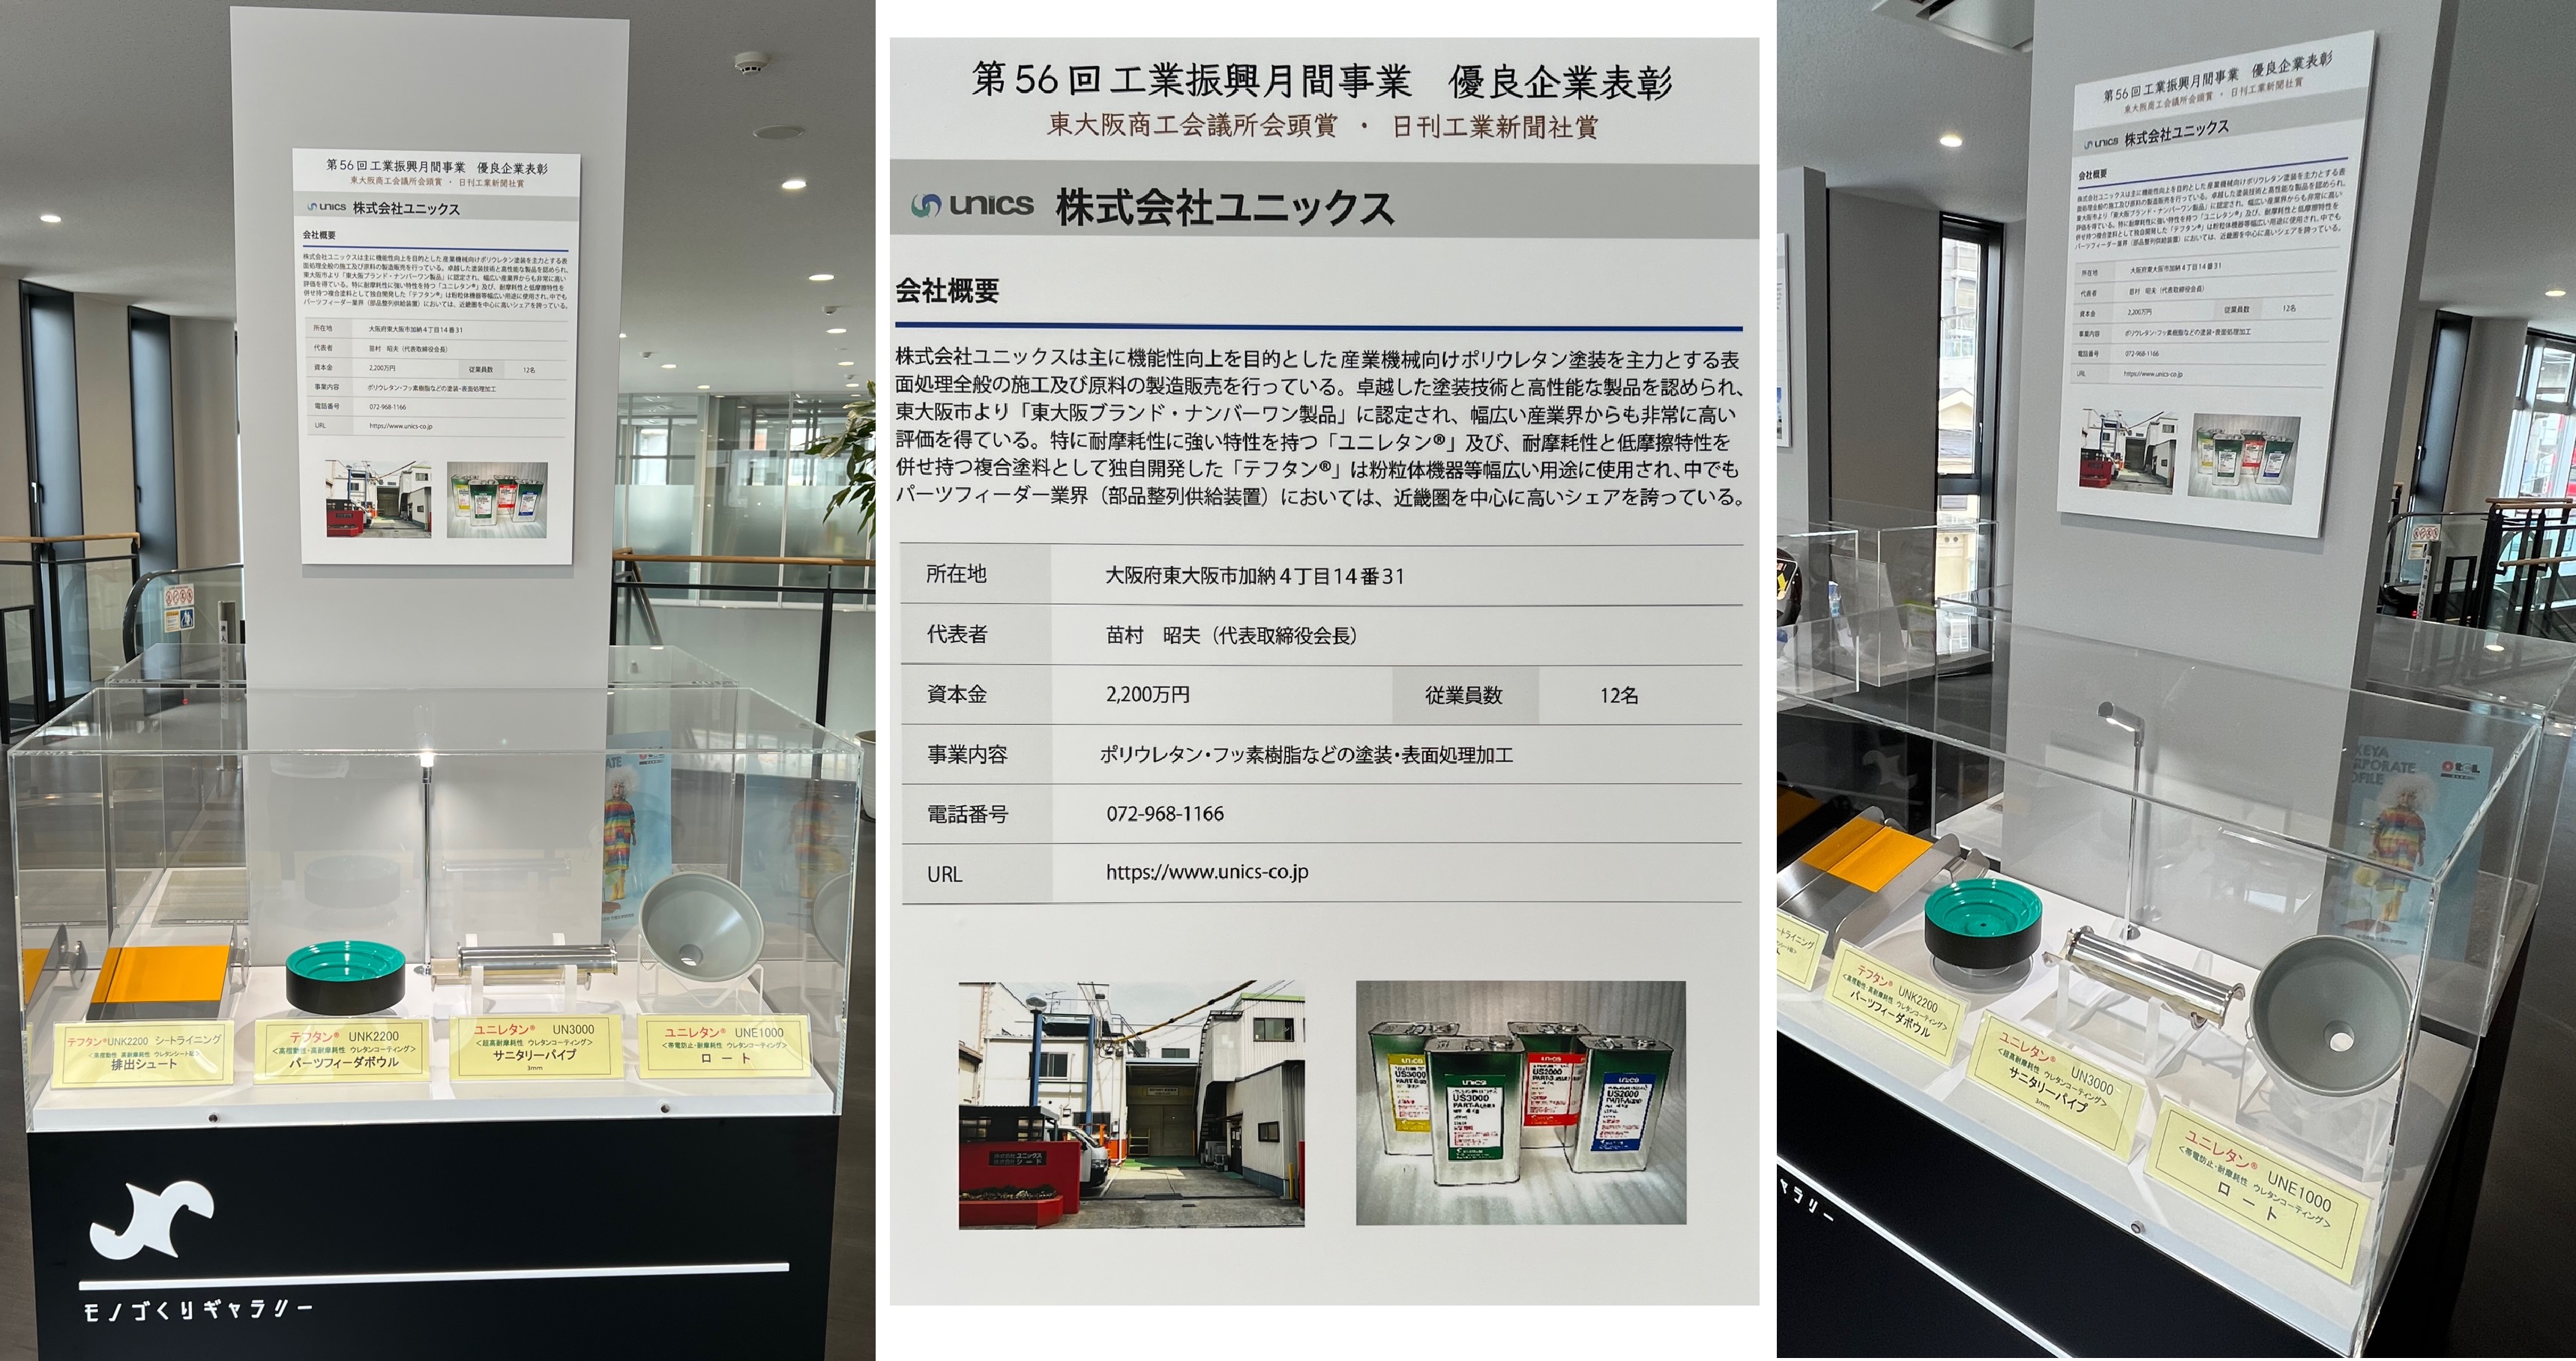 東大阪商工会議所に展示されています。